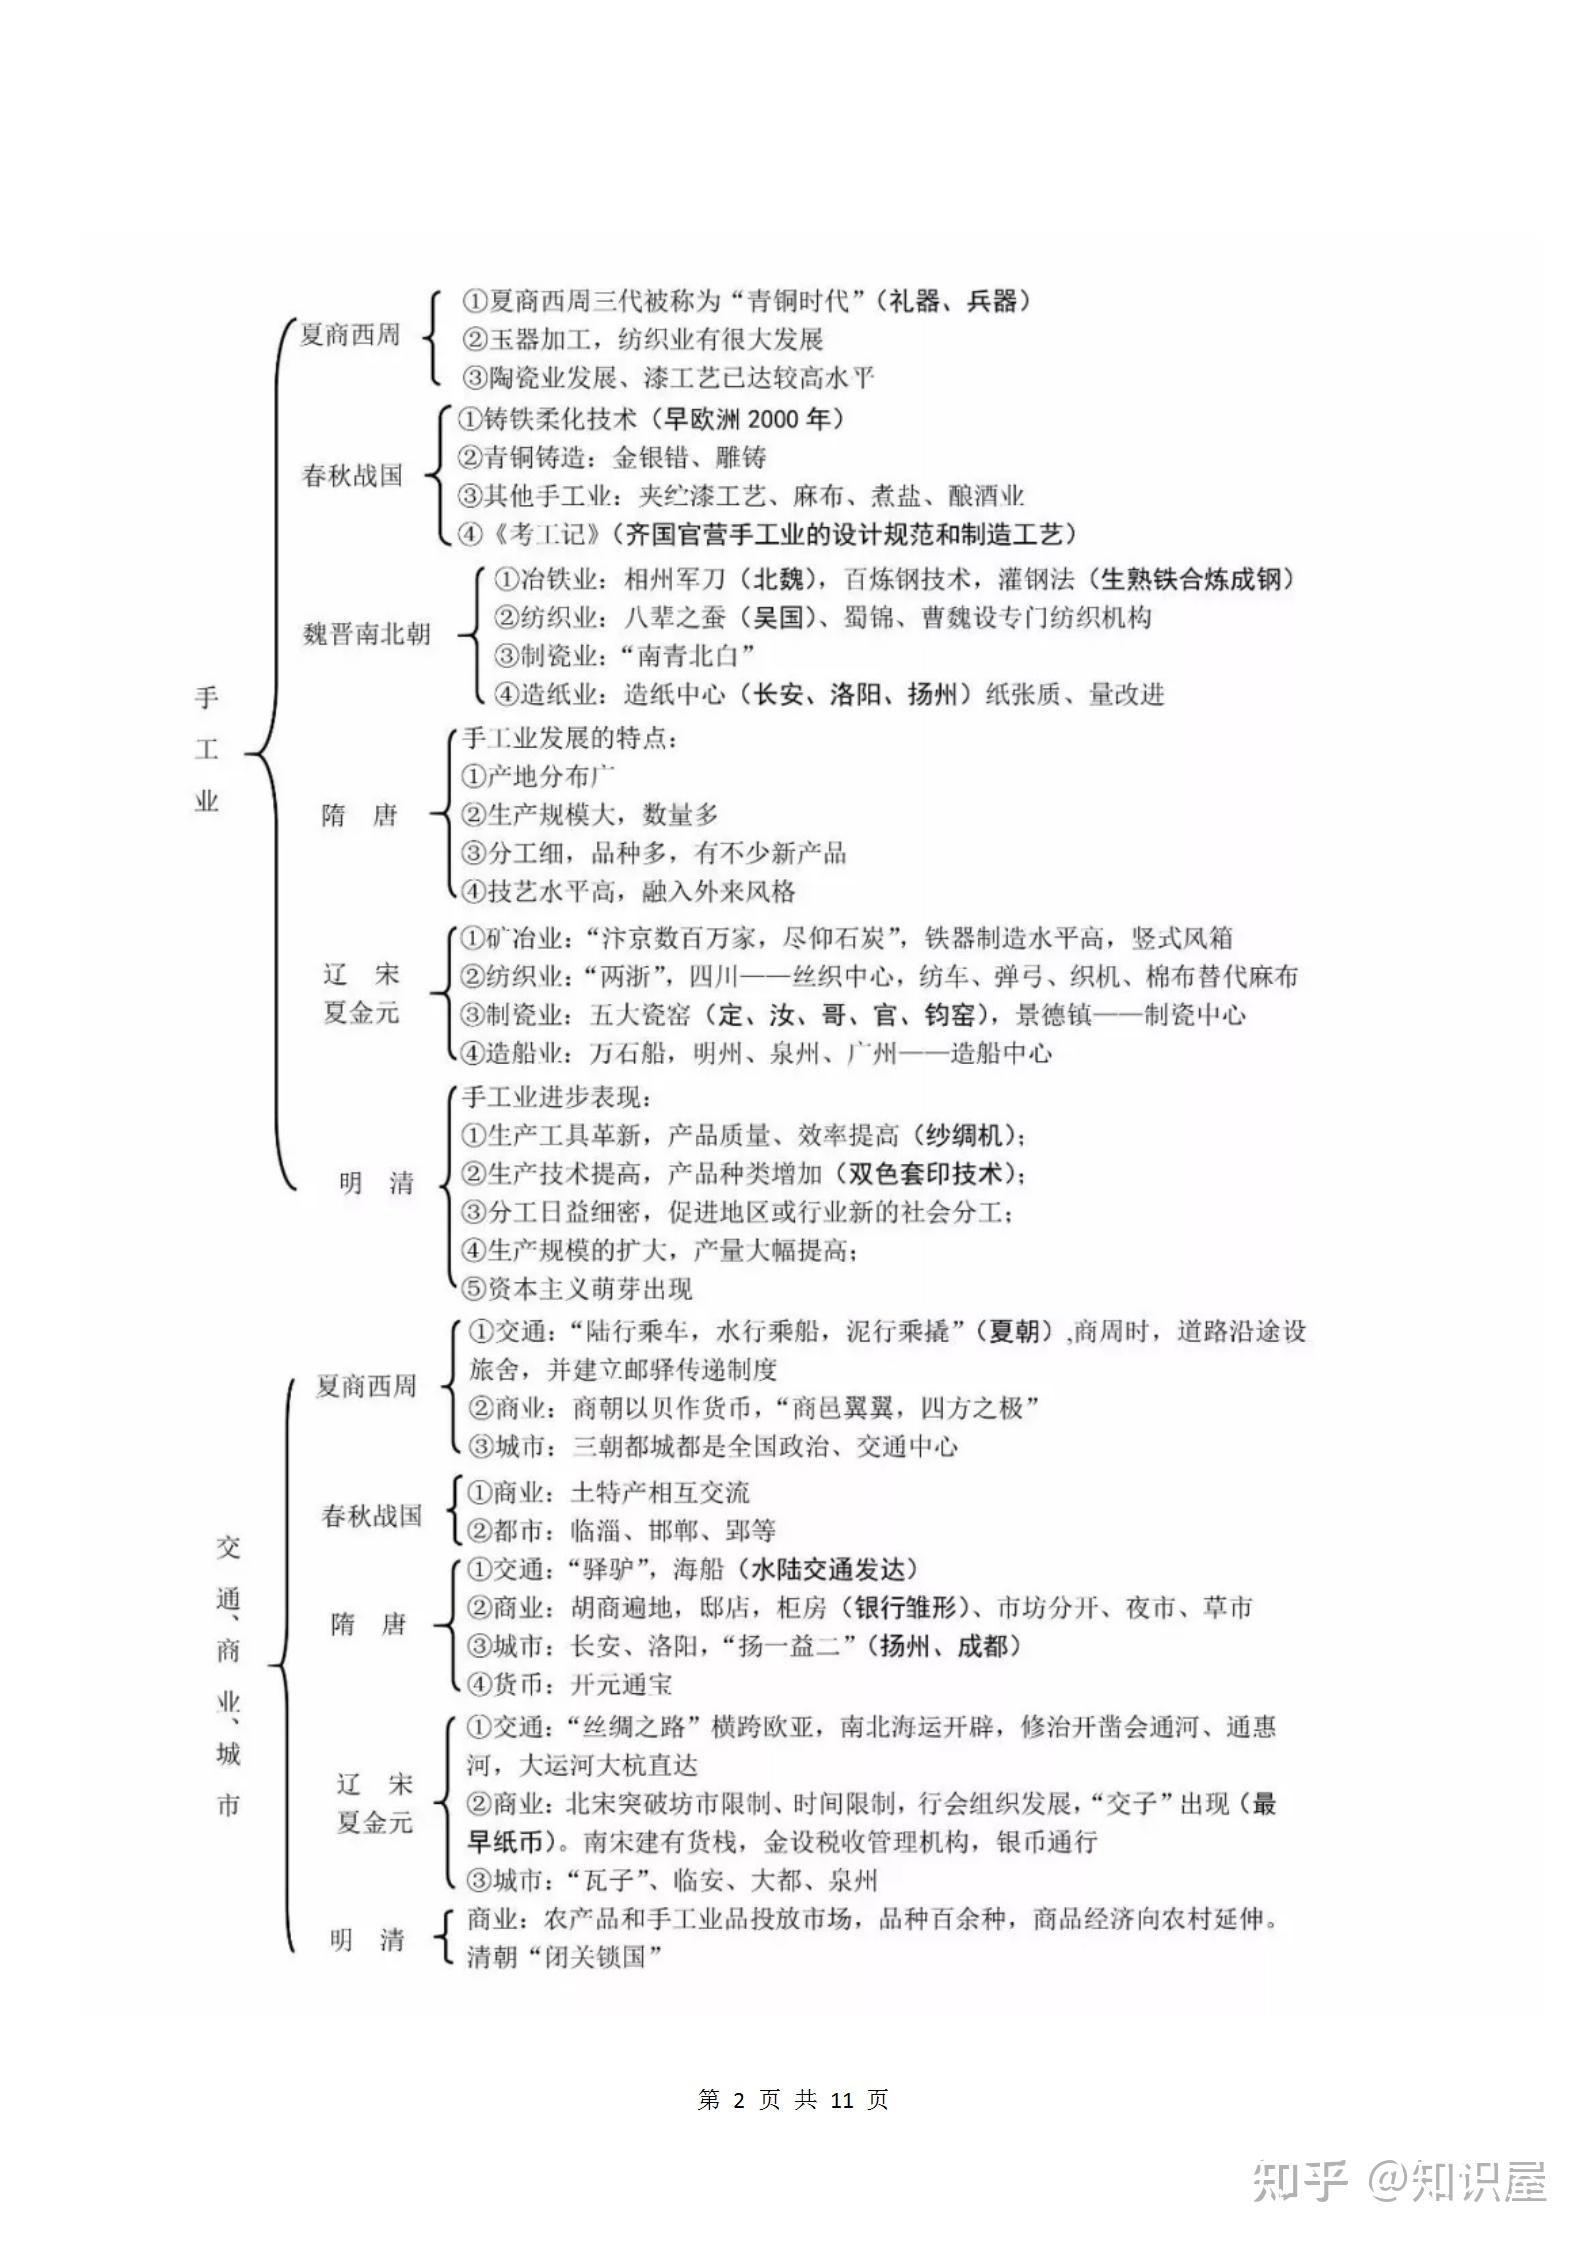 高中历史:中国古代史(政治/经济/文化)知识框架汇总